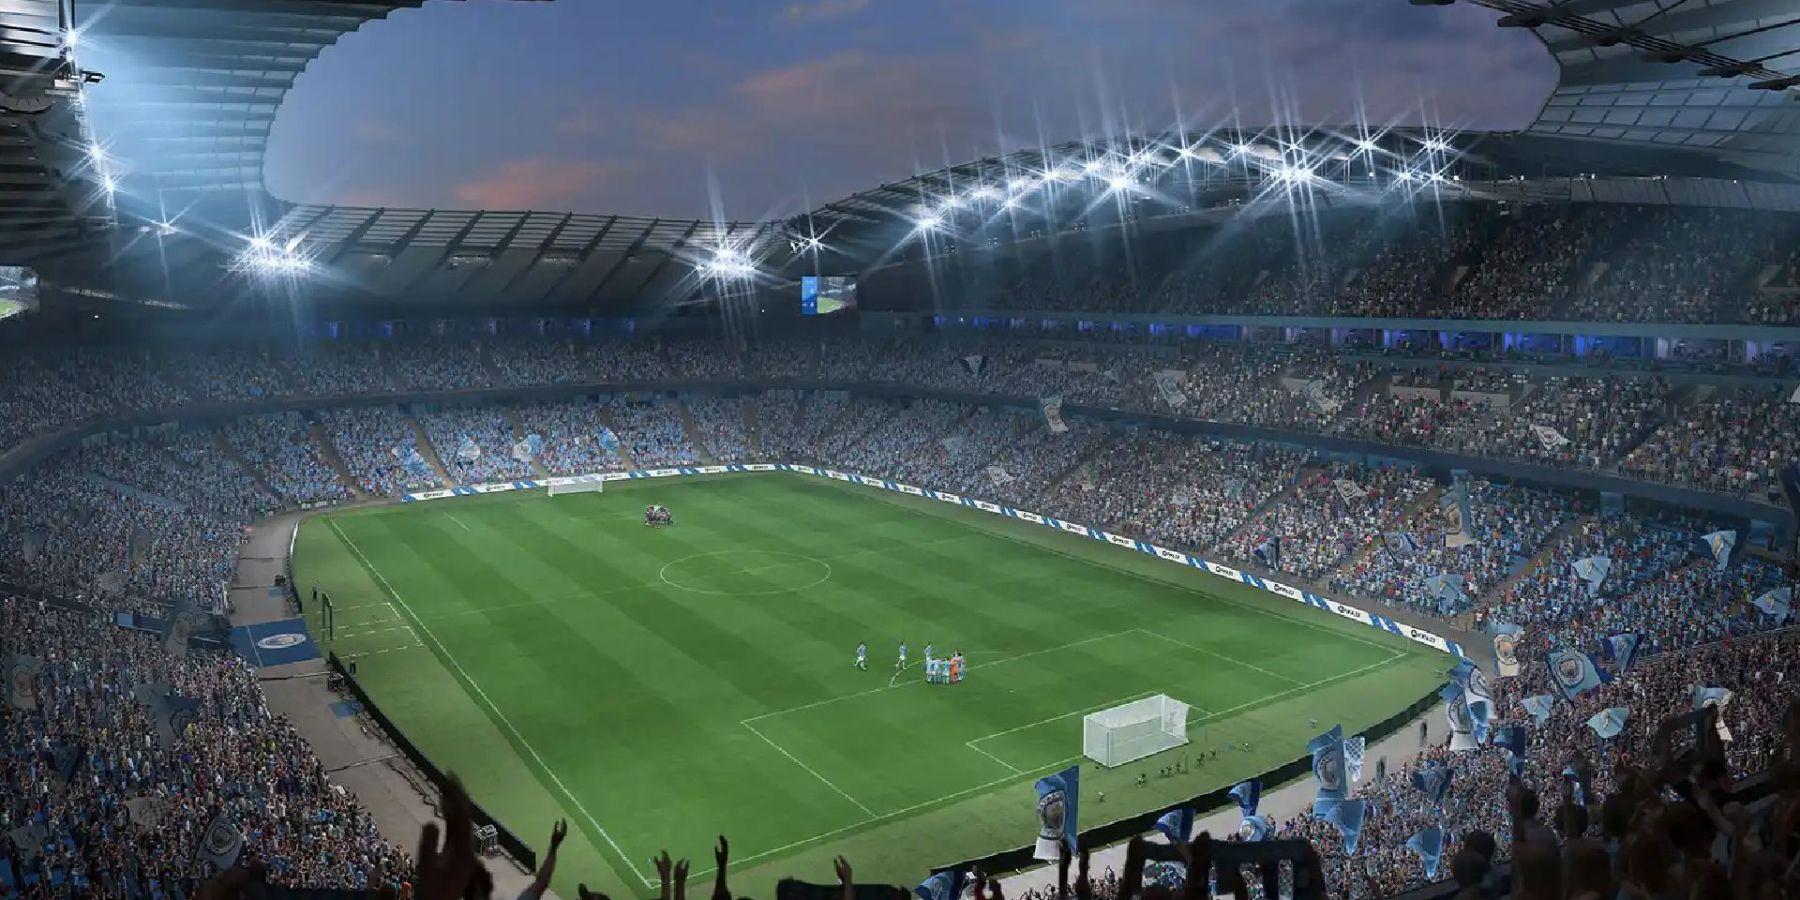 Olhando para o campo de uma seção mais alta em um estádio FIFA 23.